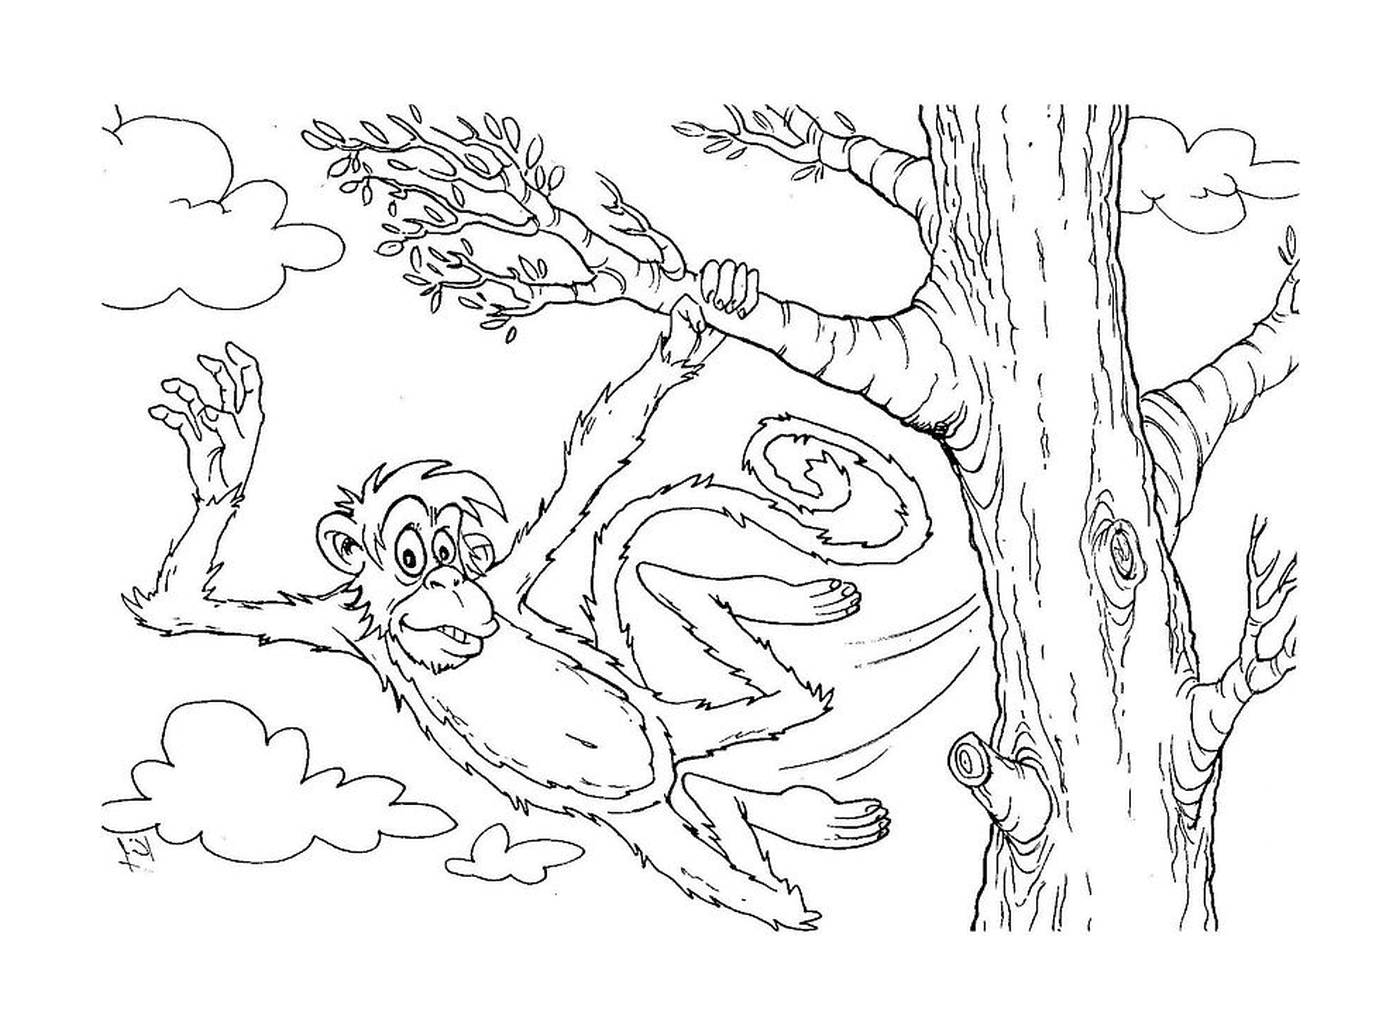  Una scimmia appesa ad un albero 